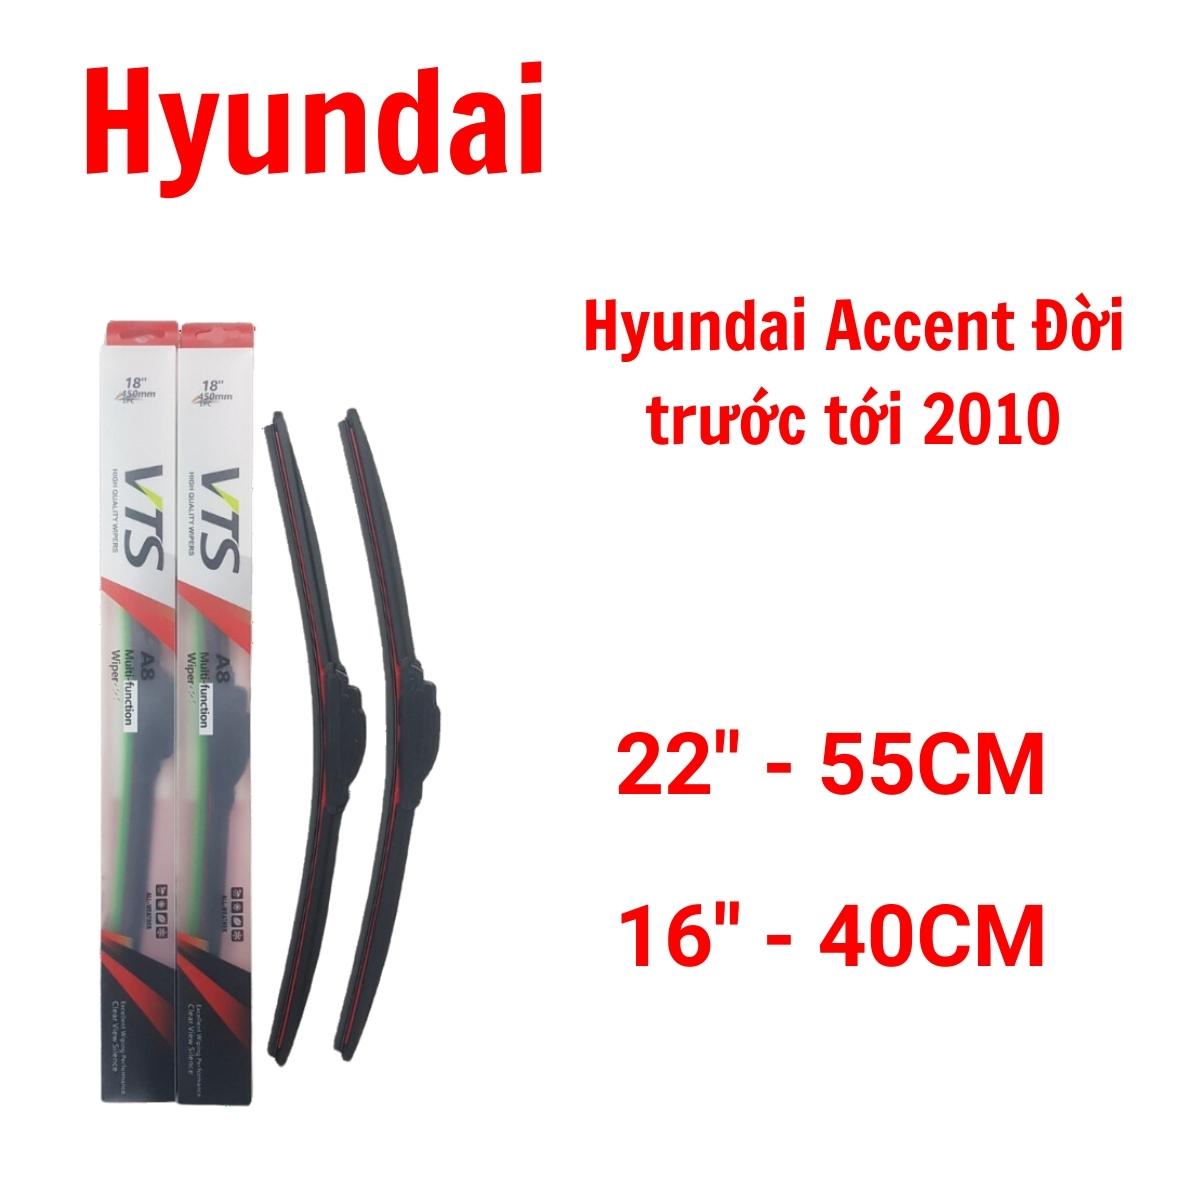 Cần gạt mưa ô tô thanh mềm A8 dành cho xe Hyundai: Getz, Accent, Avante, I10,20,30 - Hàng nhập khẩu